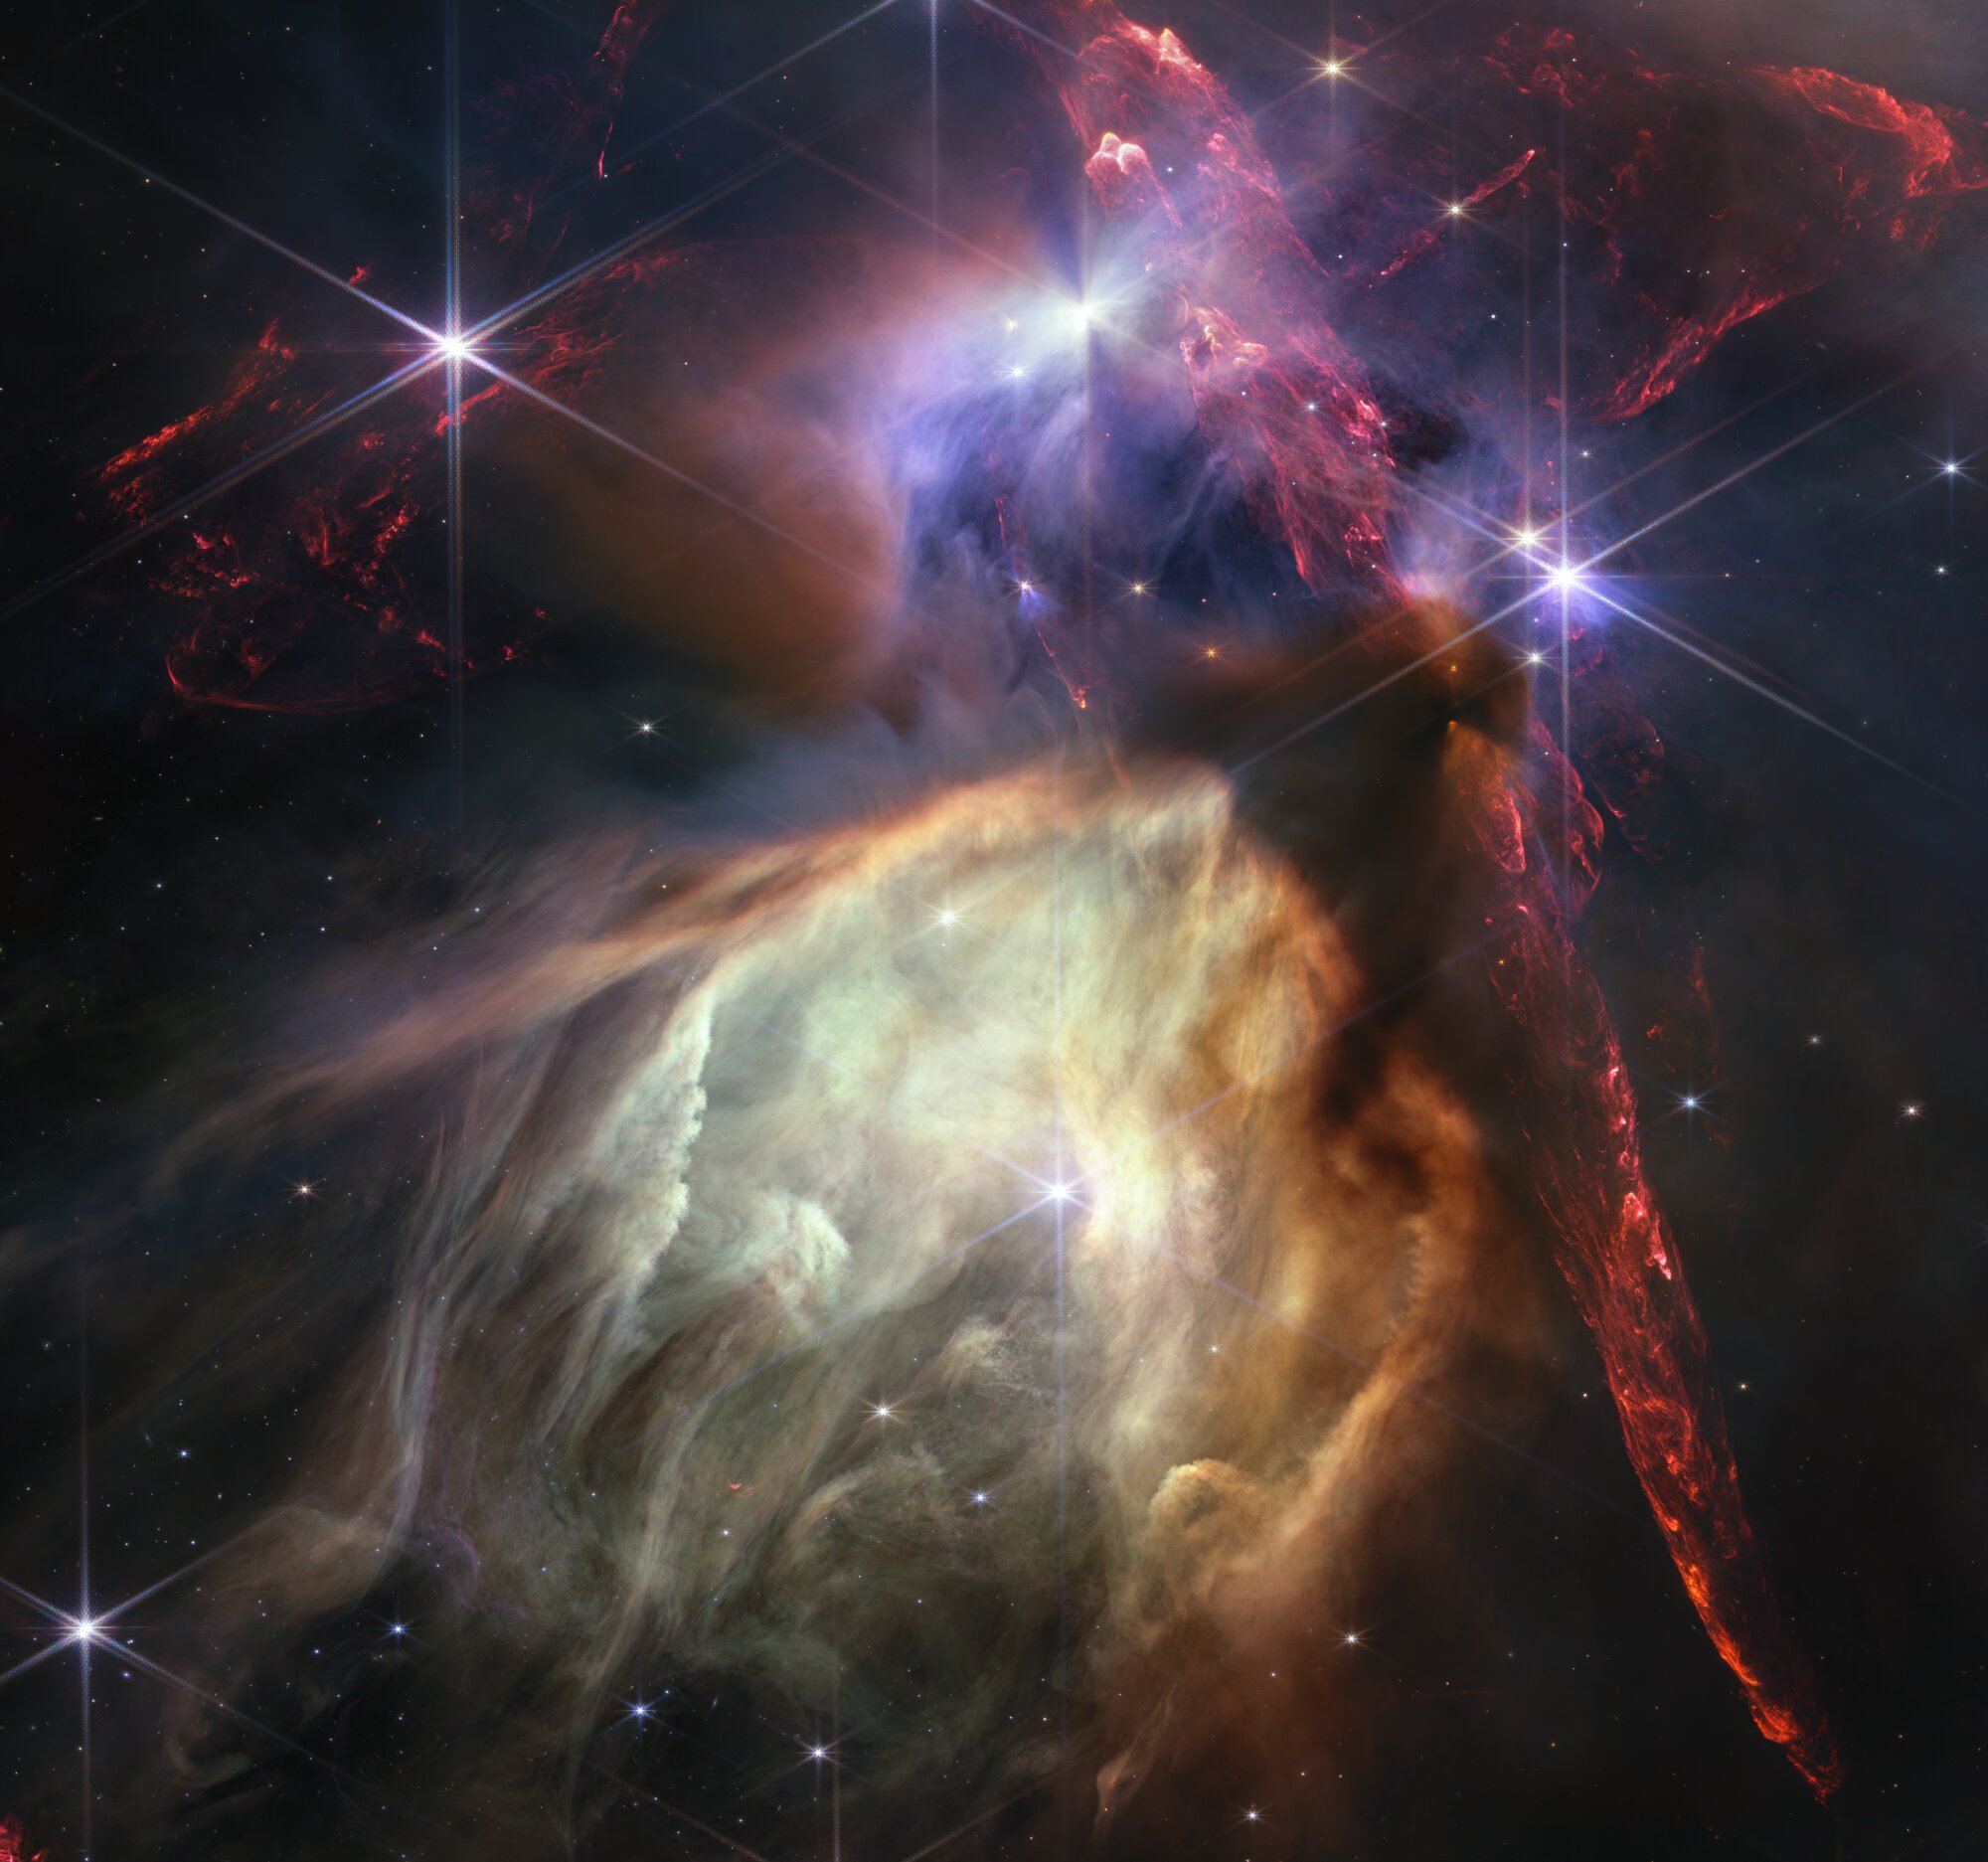 Webbův vesmírný dalekohled odhaluje okamžik zrození hvězdy, dramatický detailní záběr 50 mladých hvězd